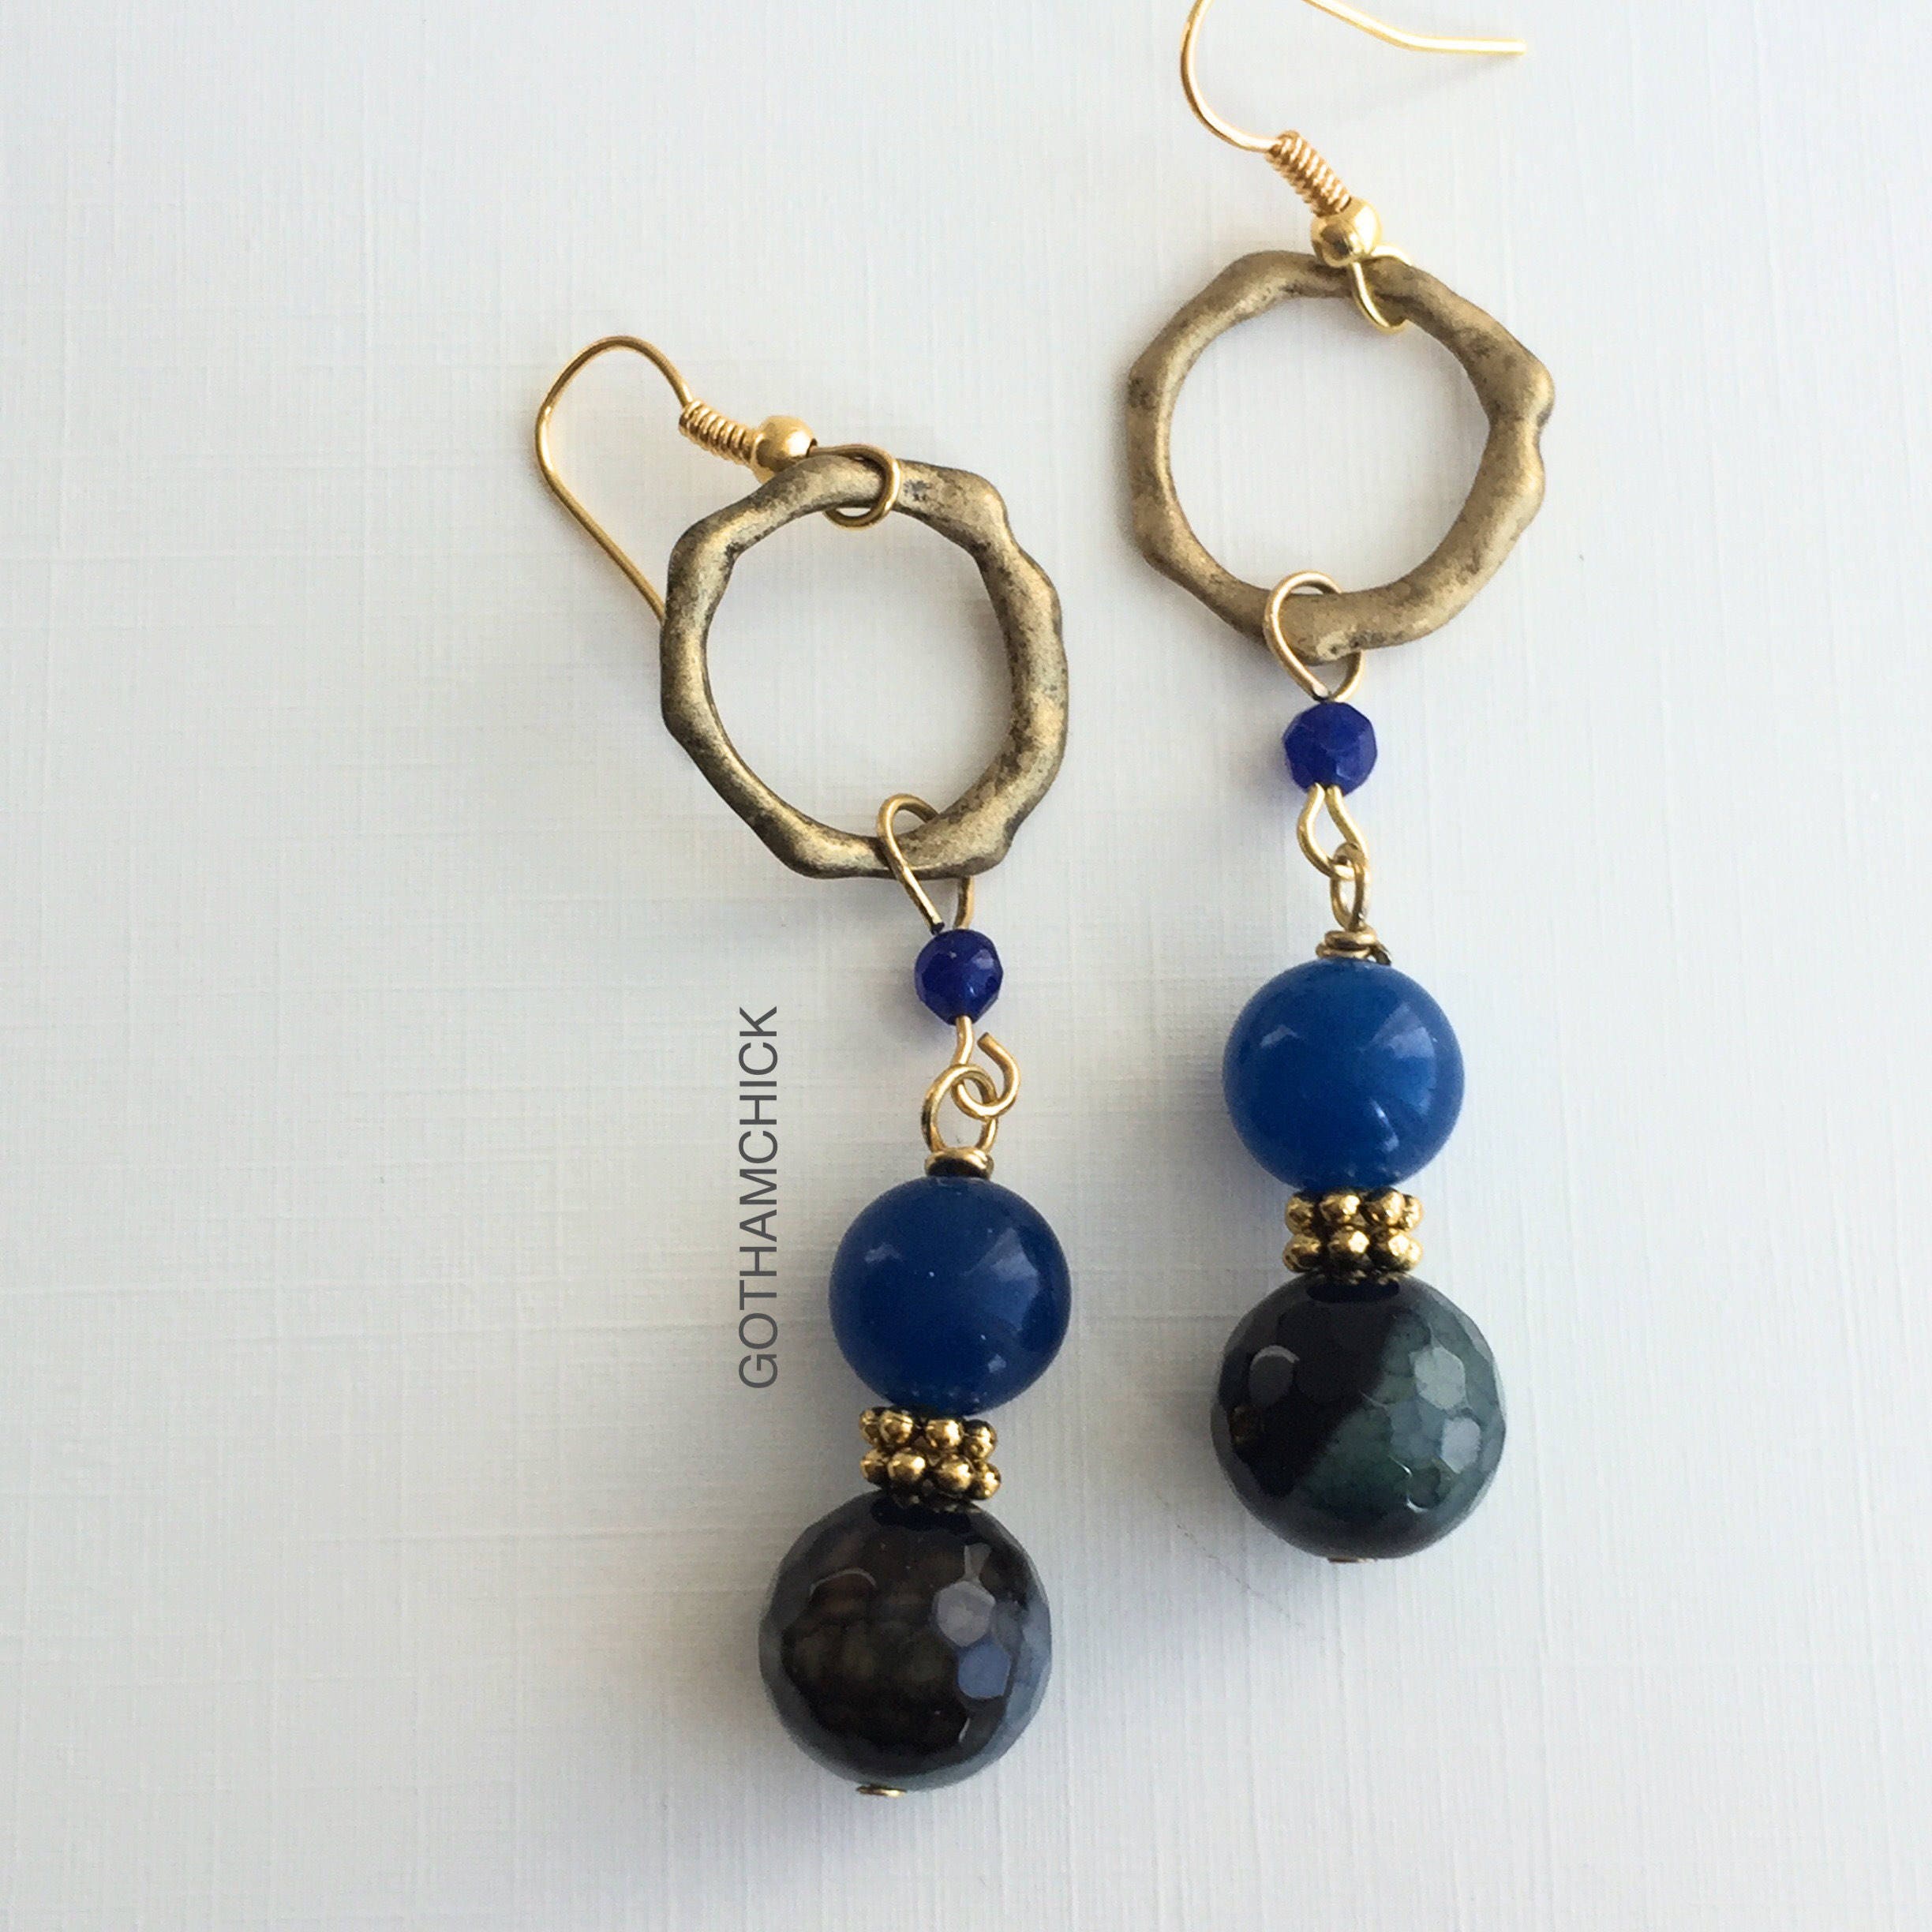 Dark Night Luna in Black and Blue Agate Earrings - Etsy